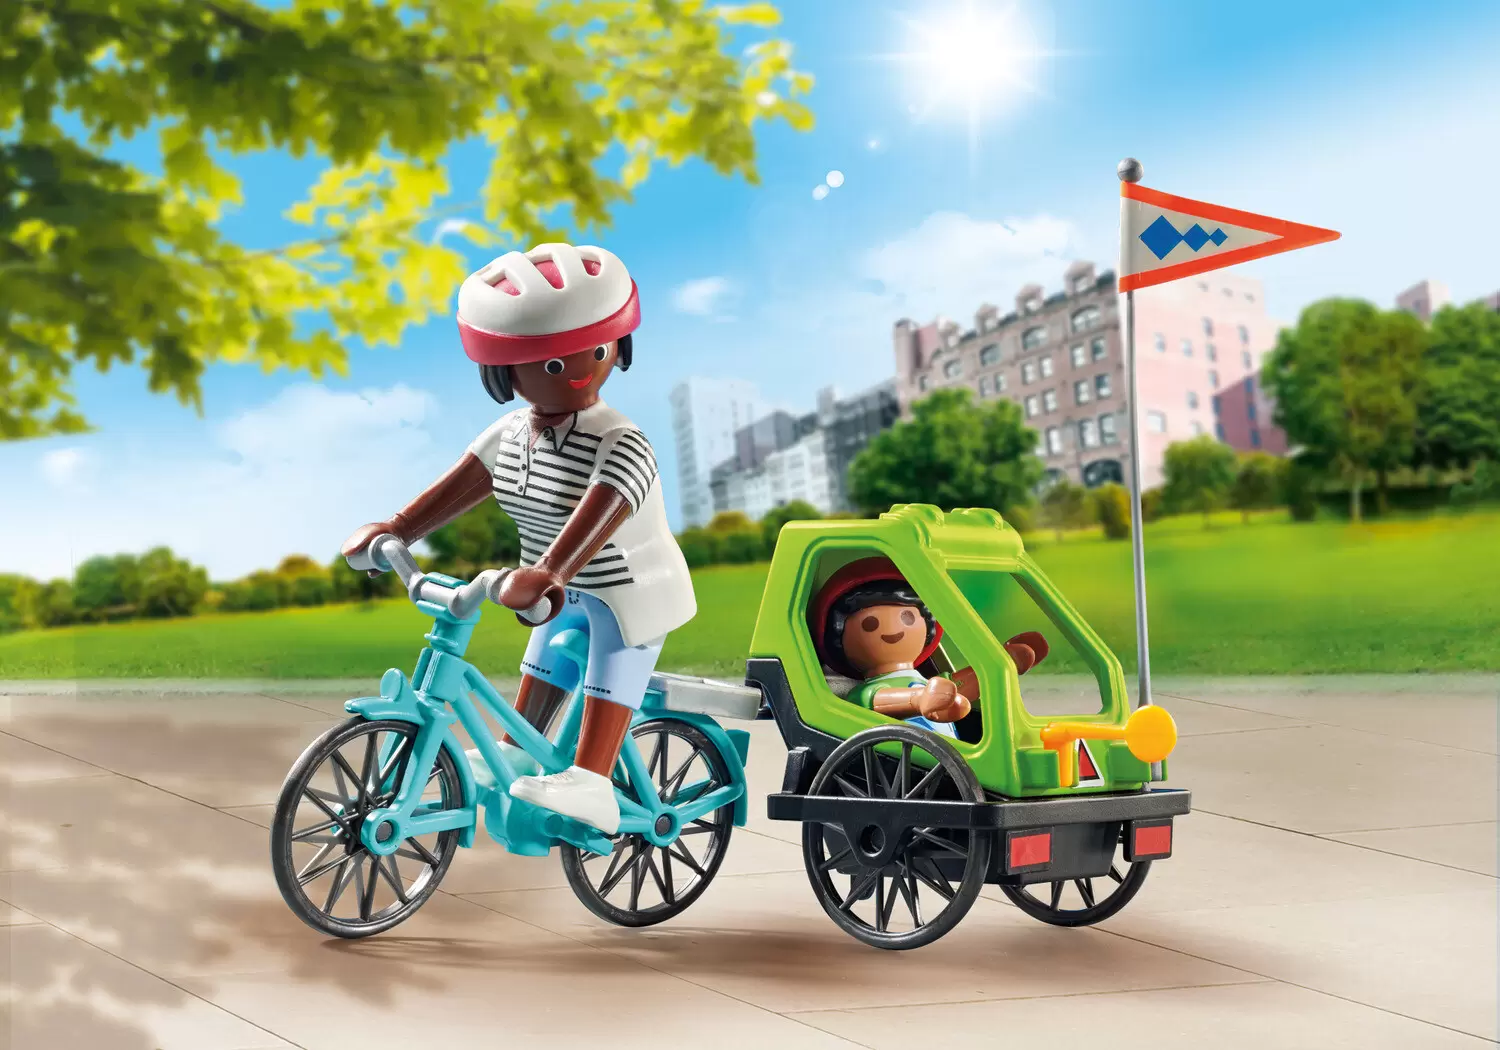 Playmobil SpecialPlus - Bicycle & Sleigh ride